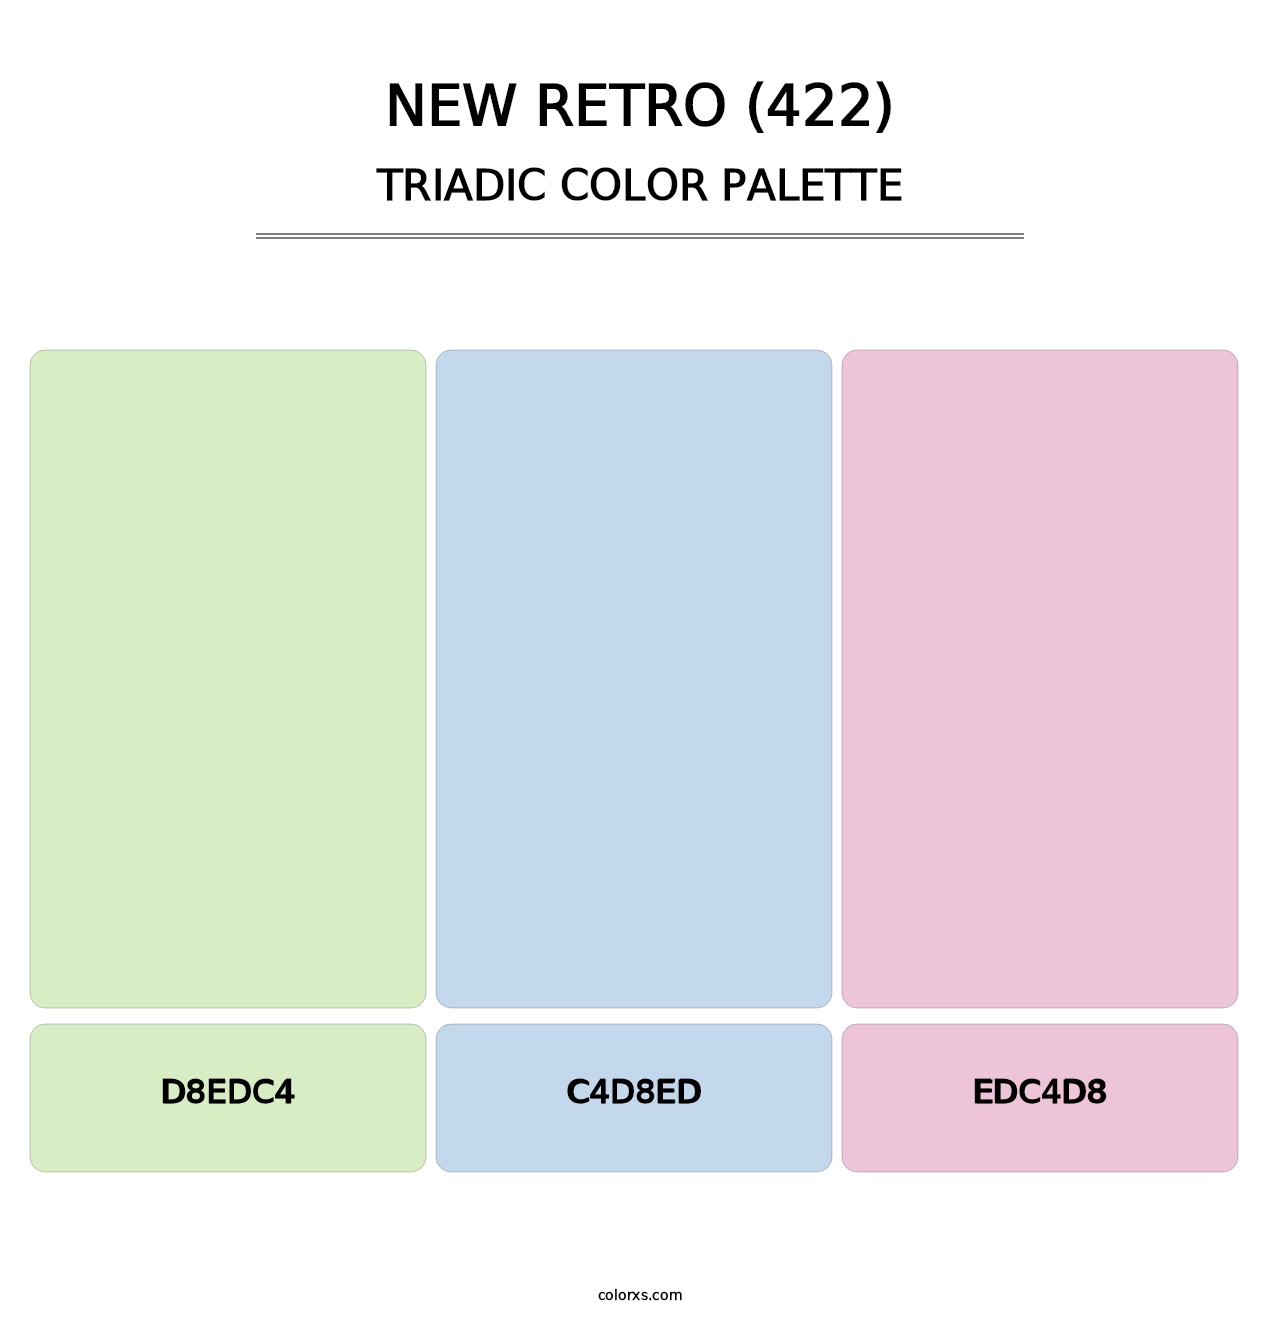 New Retro (422) - Triadic Color Palette